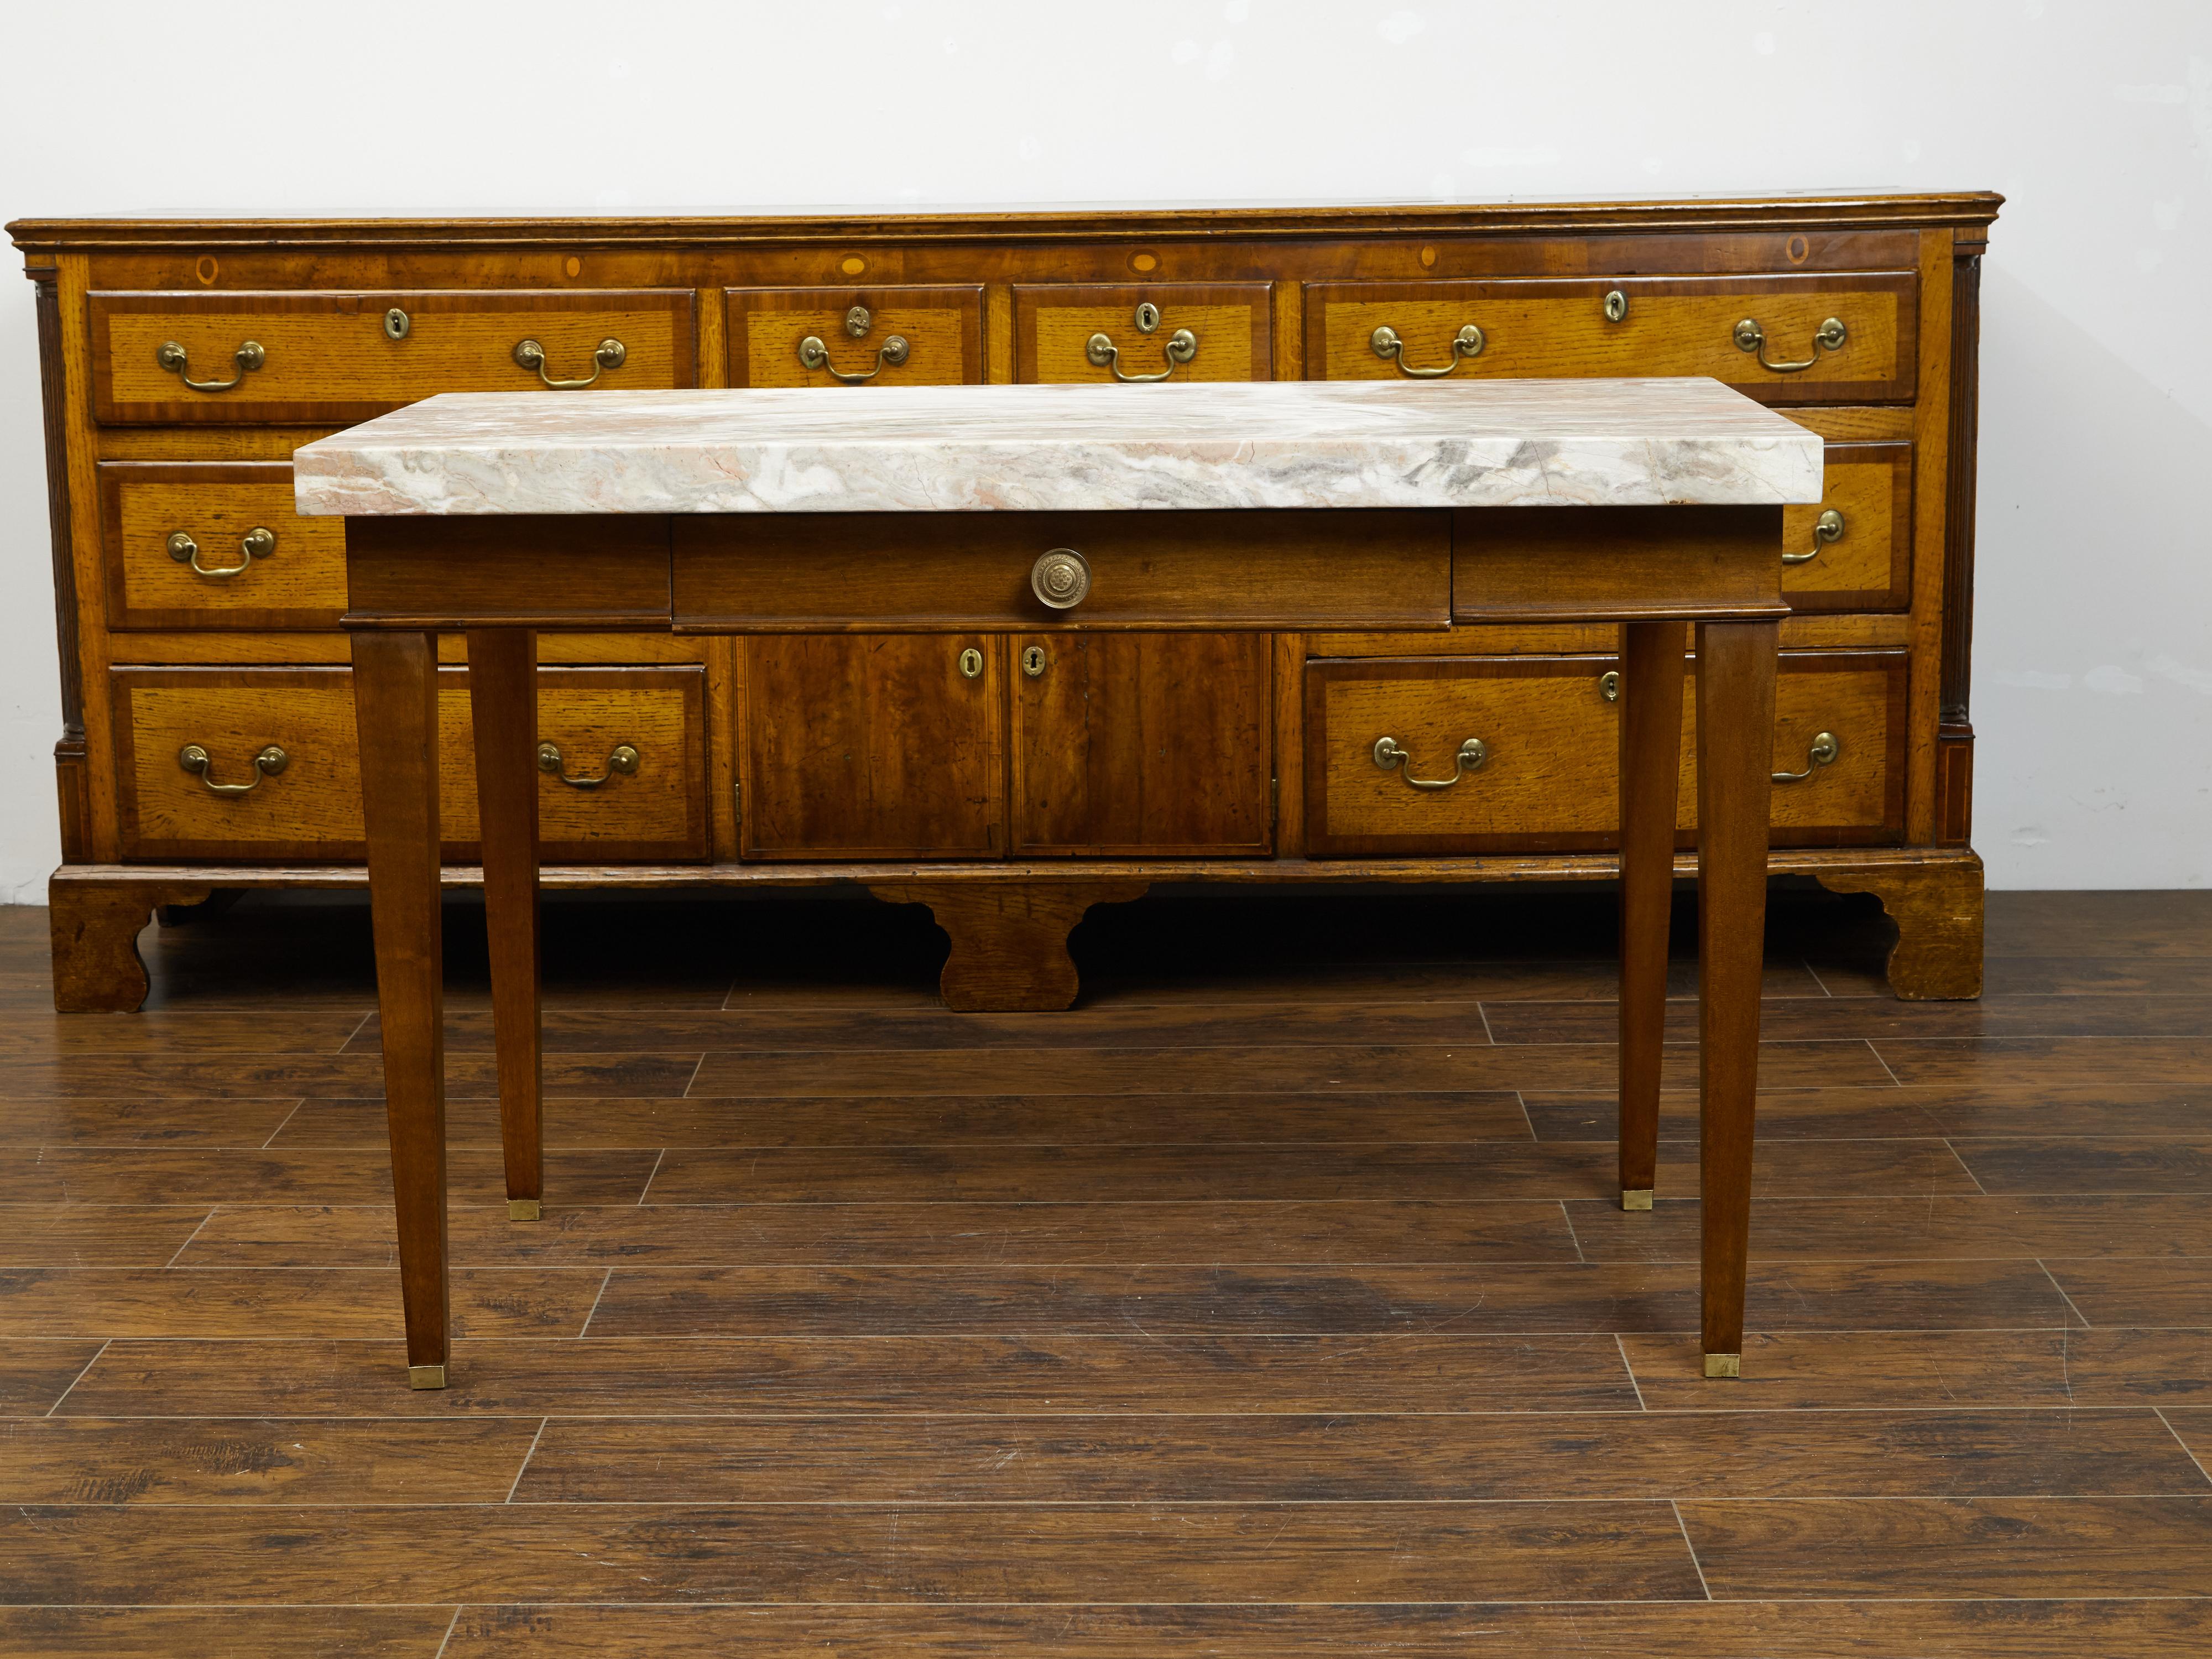 Französischer Nussbaumtisch aus dem 19. Jahrhundert, mit Marmorplatte und einer Schublade. Dieser Tisch aus Nussbaumholz, der im 19. Jahrhundert in Frankreich hergestellt wurde, hat eine rechteckige Platte aus buntem Marmor, die sich über einer